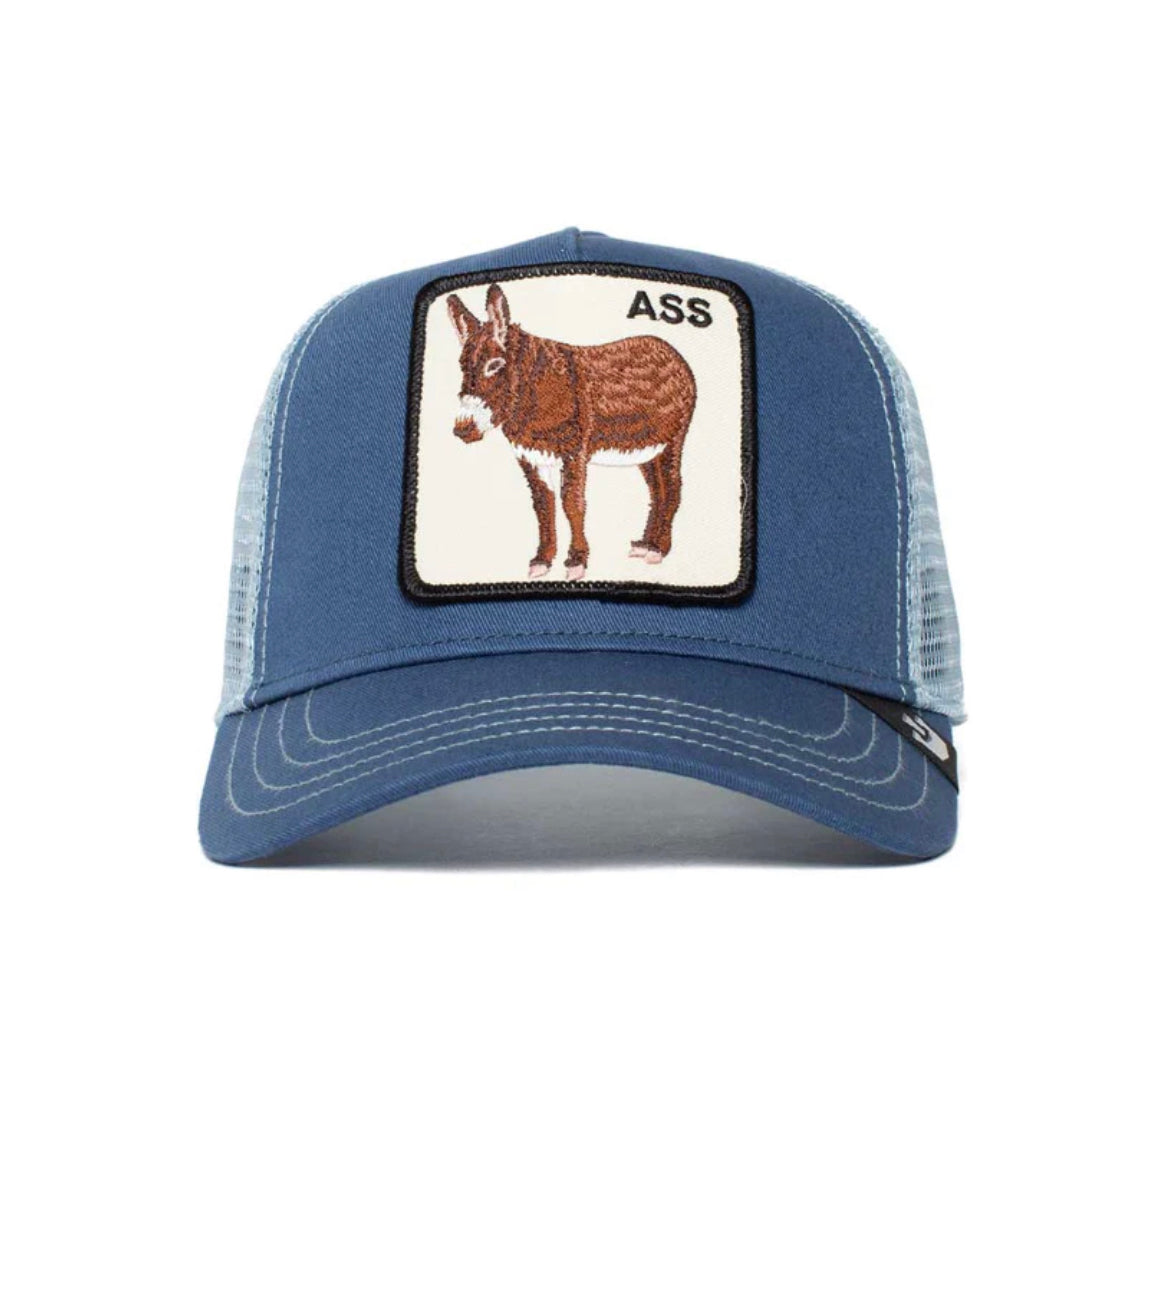 Goorin Bros Goorin Bros The Ass Trucker Hat (Blue)